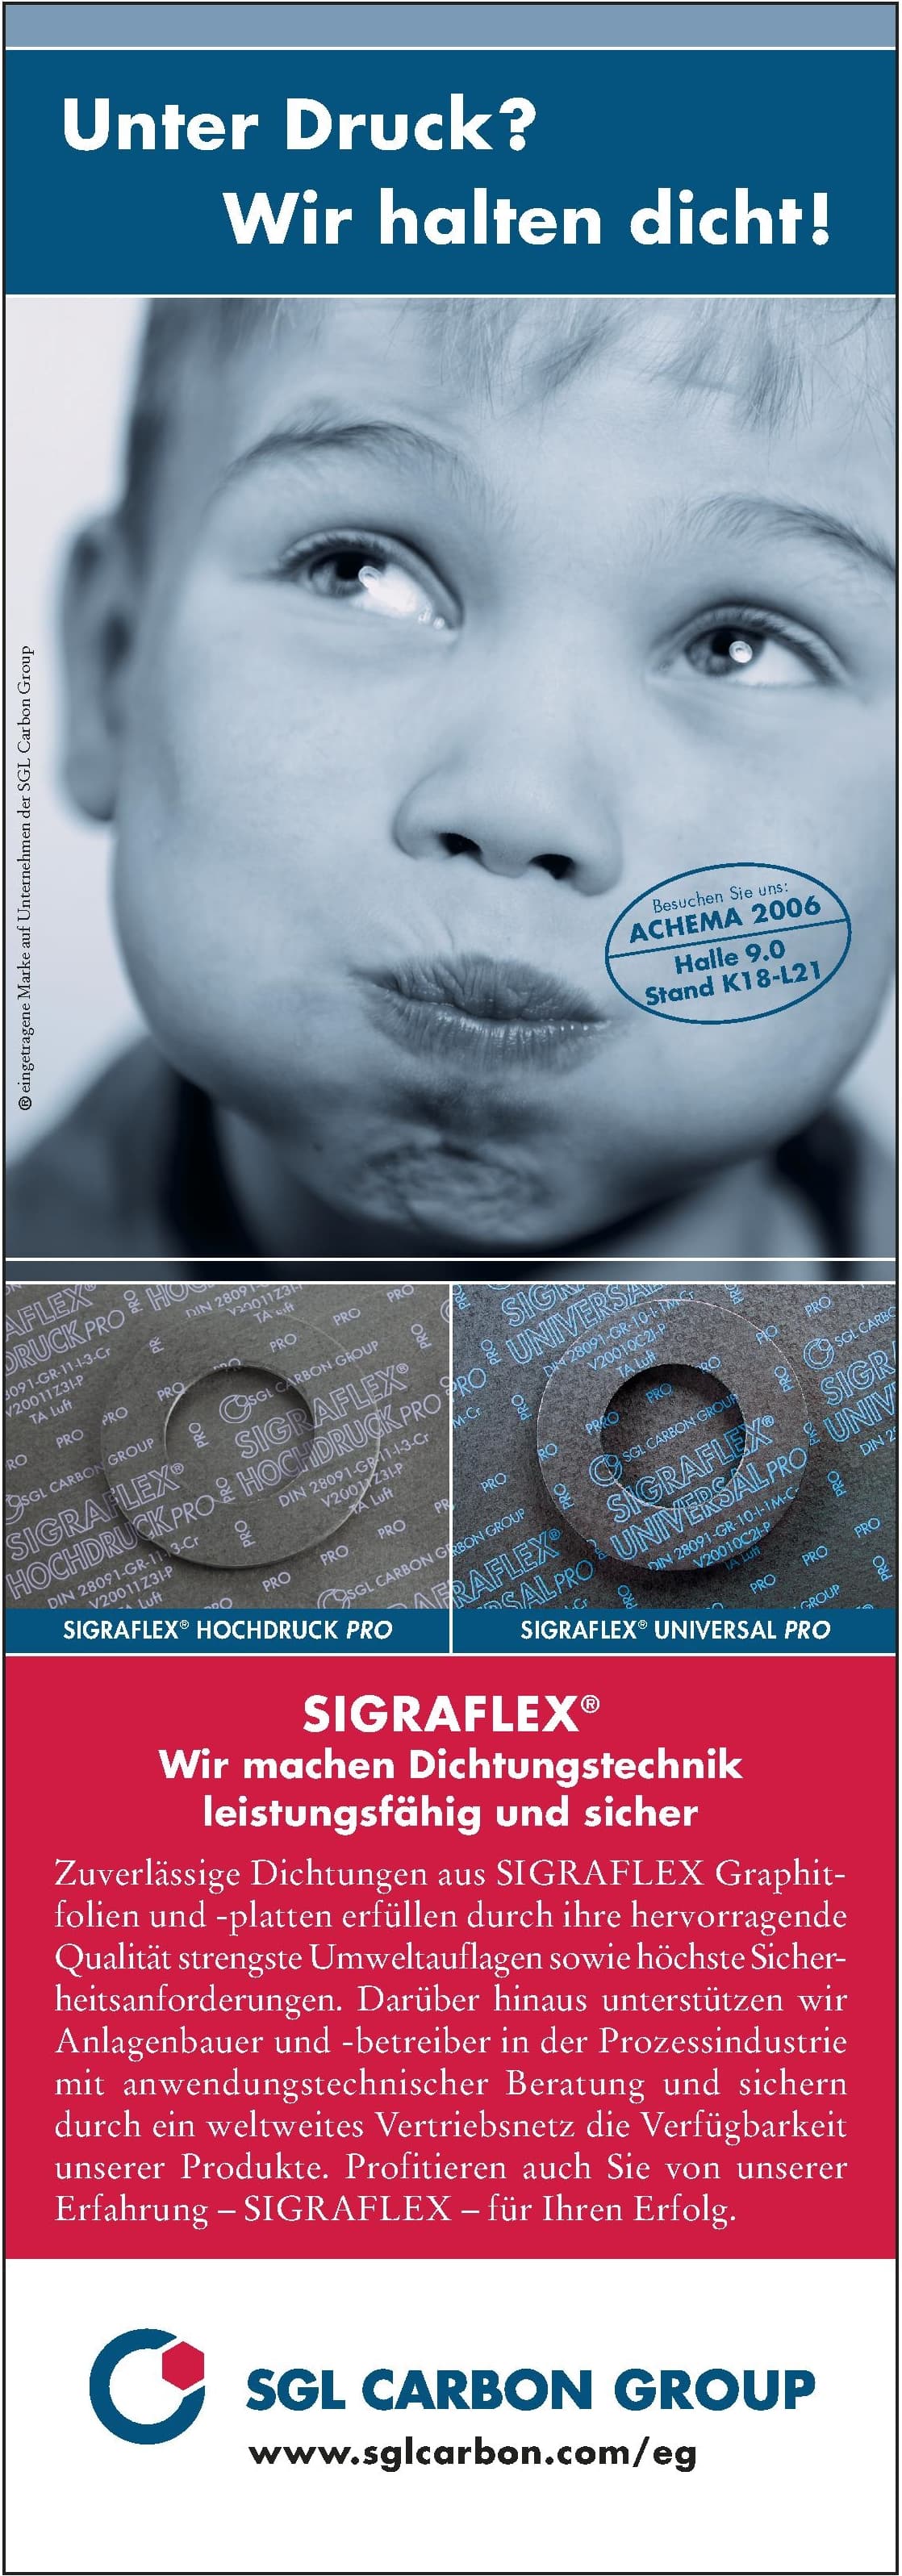 50 years of SIGRAFLEX®